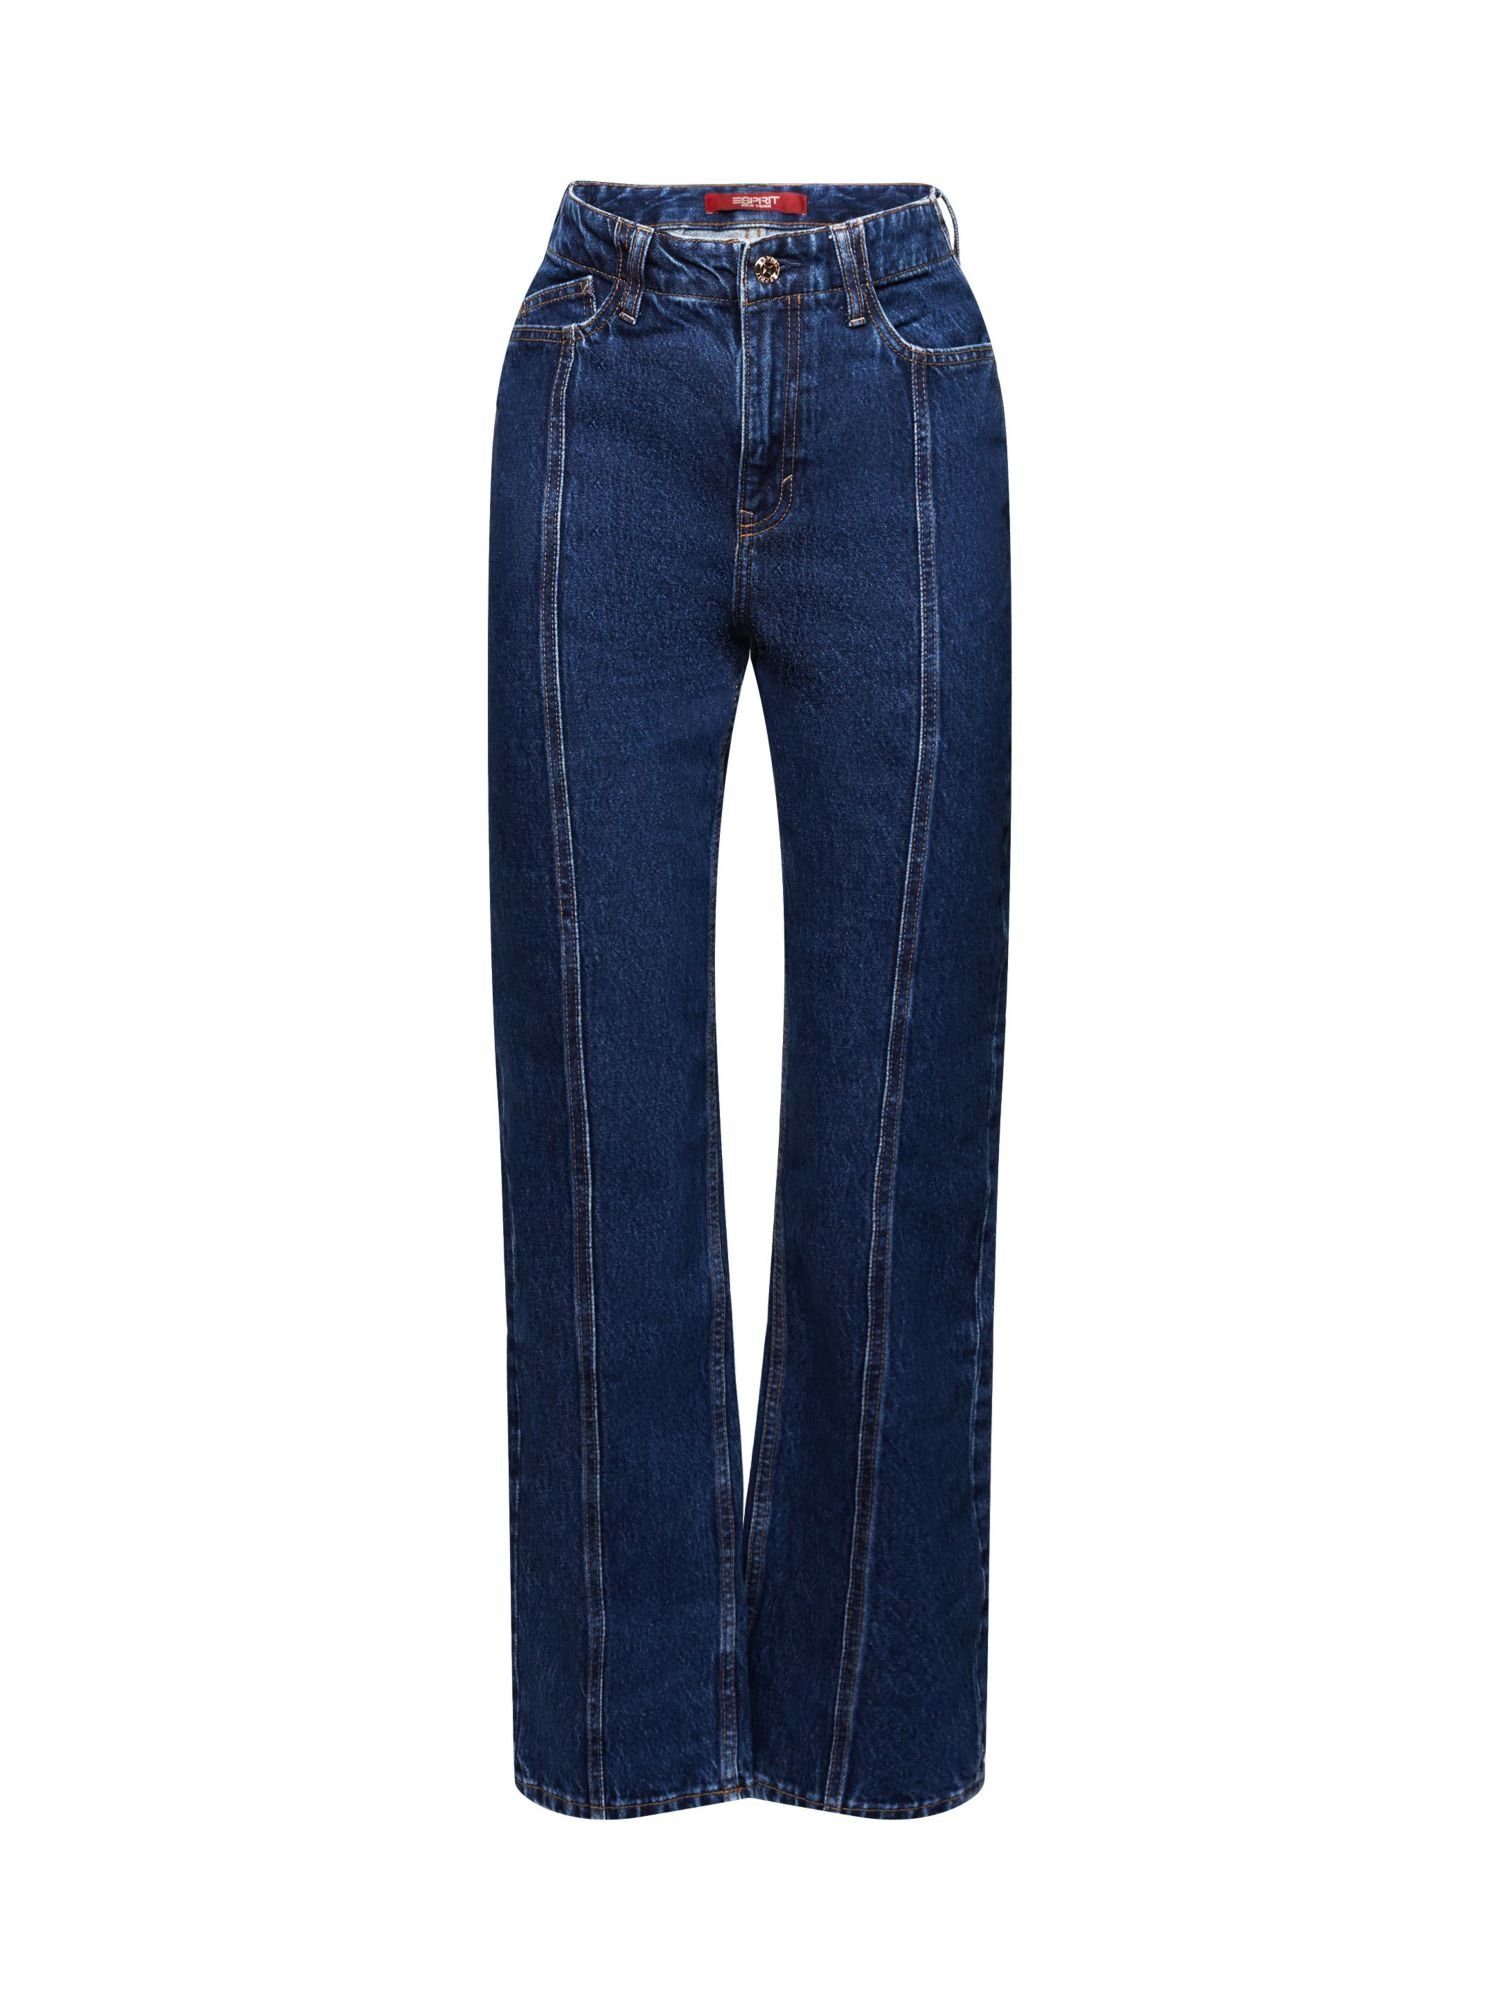 Esprit Bequeme und gerader Passform hohem mit Jeans Bund Jeans